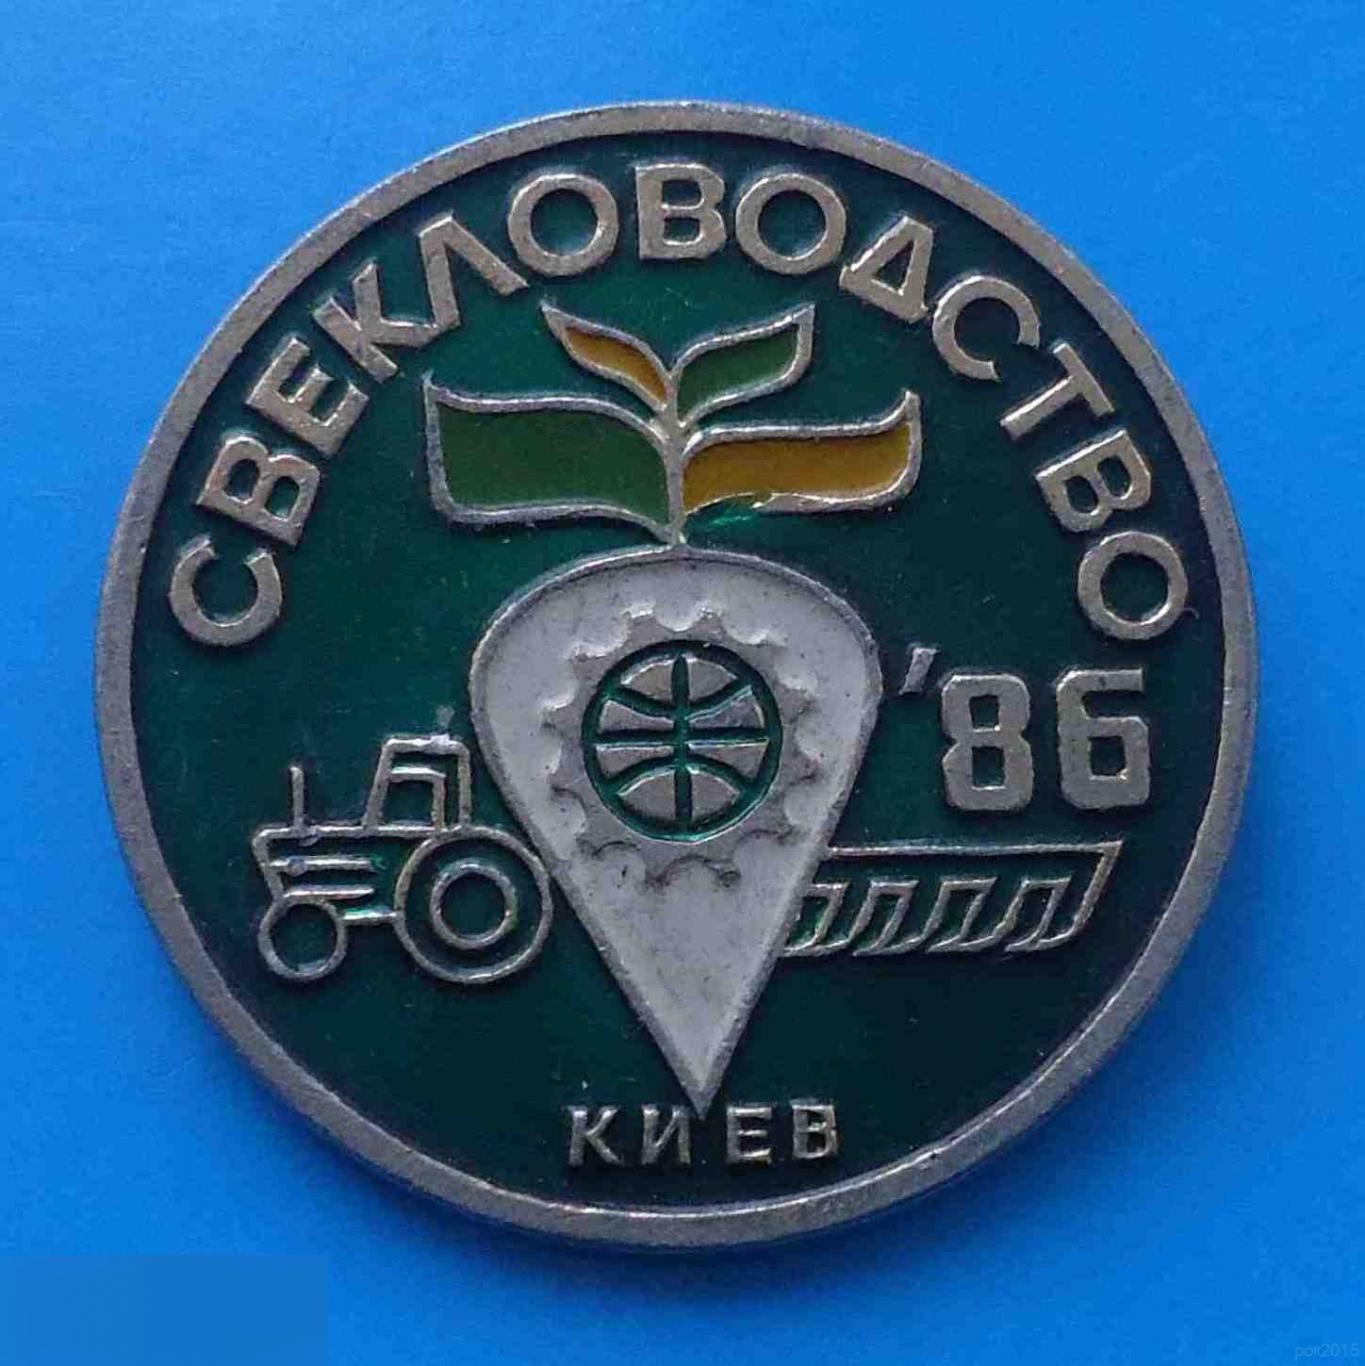 Свекловодство 1986 Киев трактор